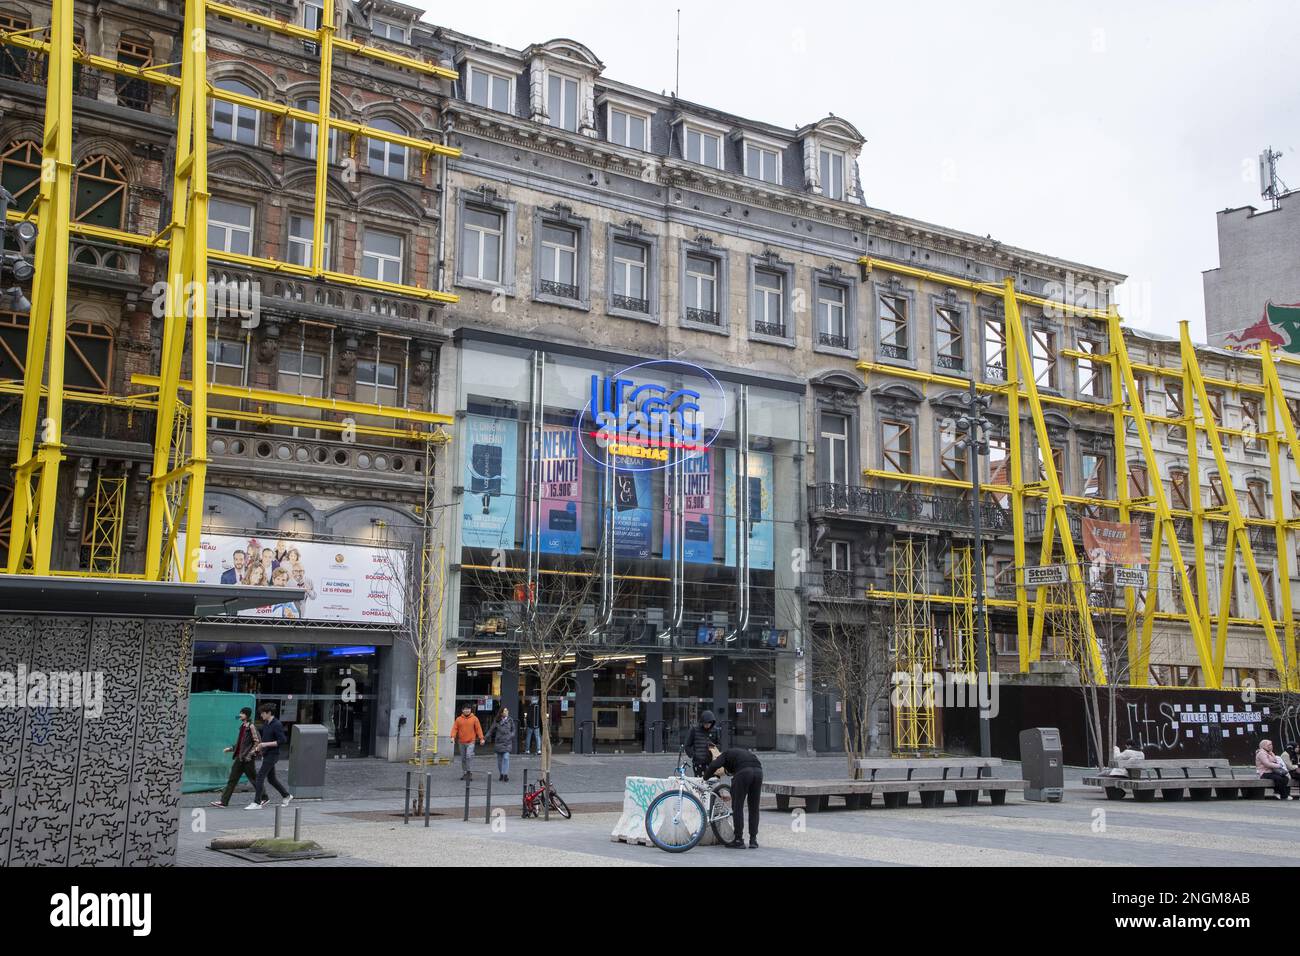 L'illustration montre le complexe cinématographique UGC dans le quartier de Brouckere place - Brouckereplein dans le centre-ville de Bruxelles, samedi 18 février 2023. BELGA PHOTO NICOLAS MATERLINCK Banque D'Images